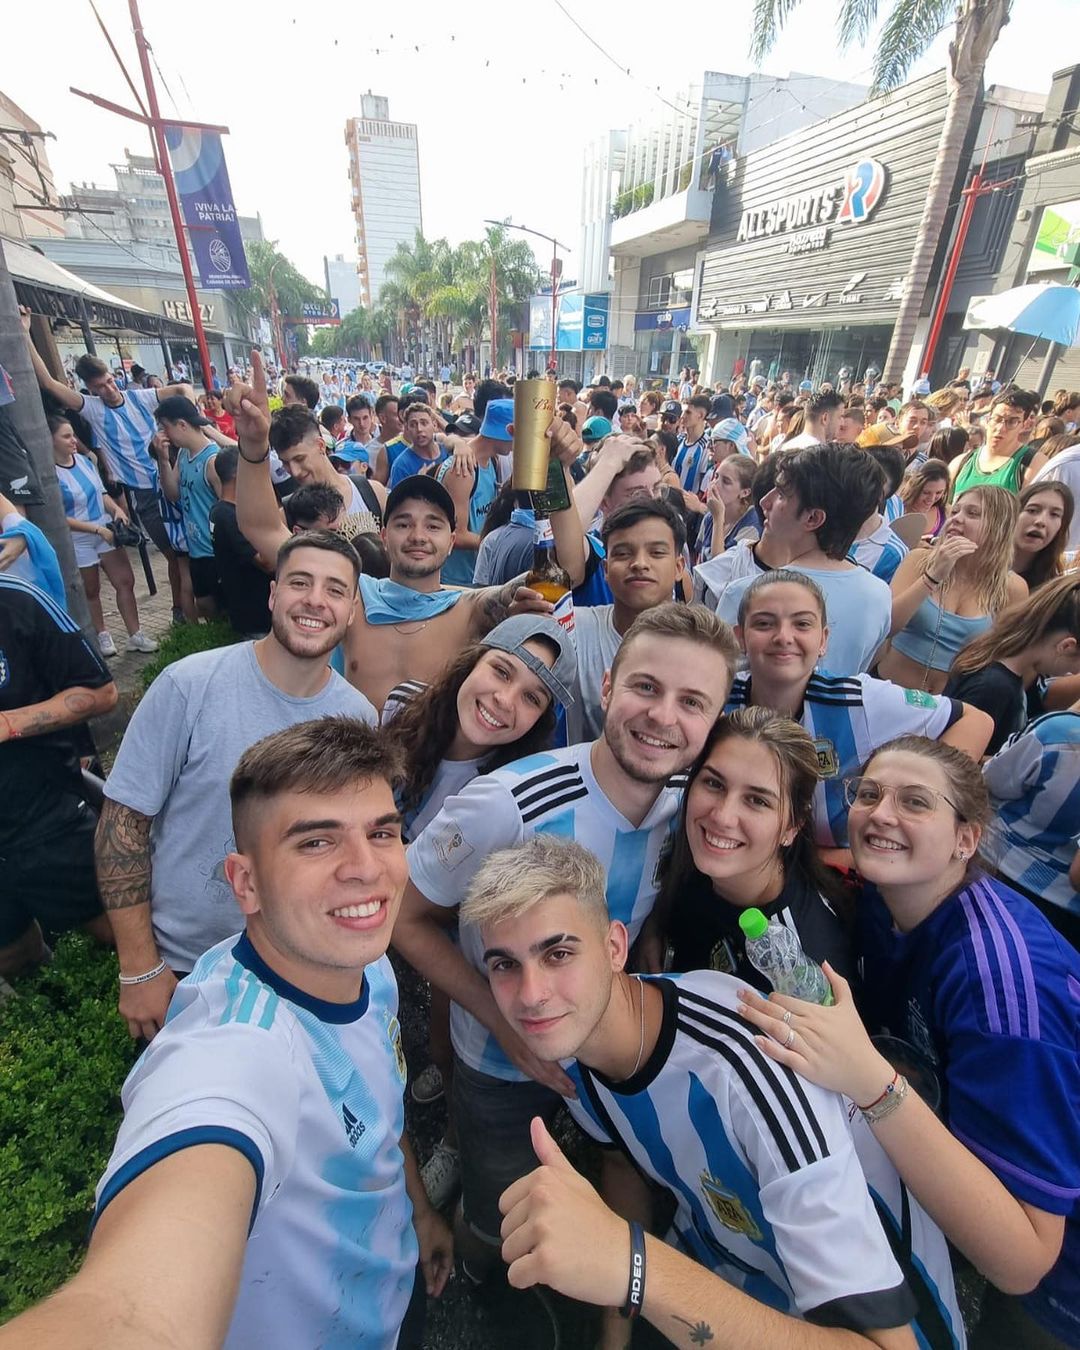 Casper celebrando la victoria argentina con sus amigos argentinos